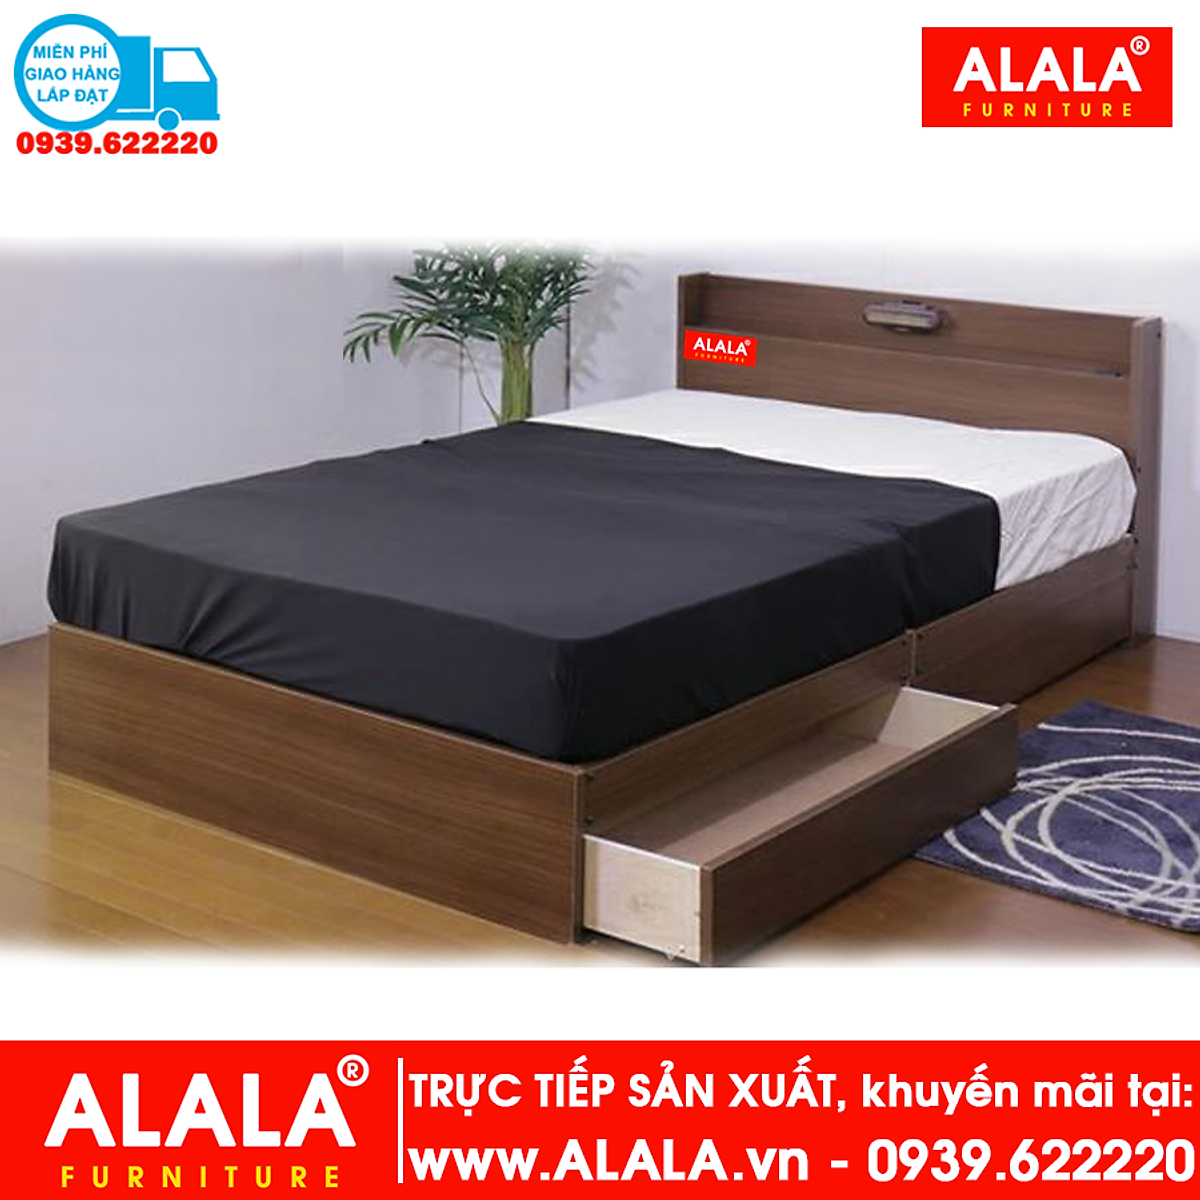 Giường ngủ ALALA31 (1m4x2m) gỗ HMR chống nước - www.ALALA.vn® - Za ...